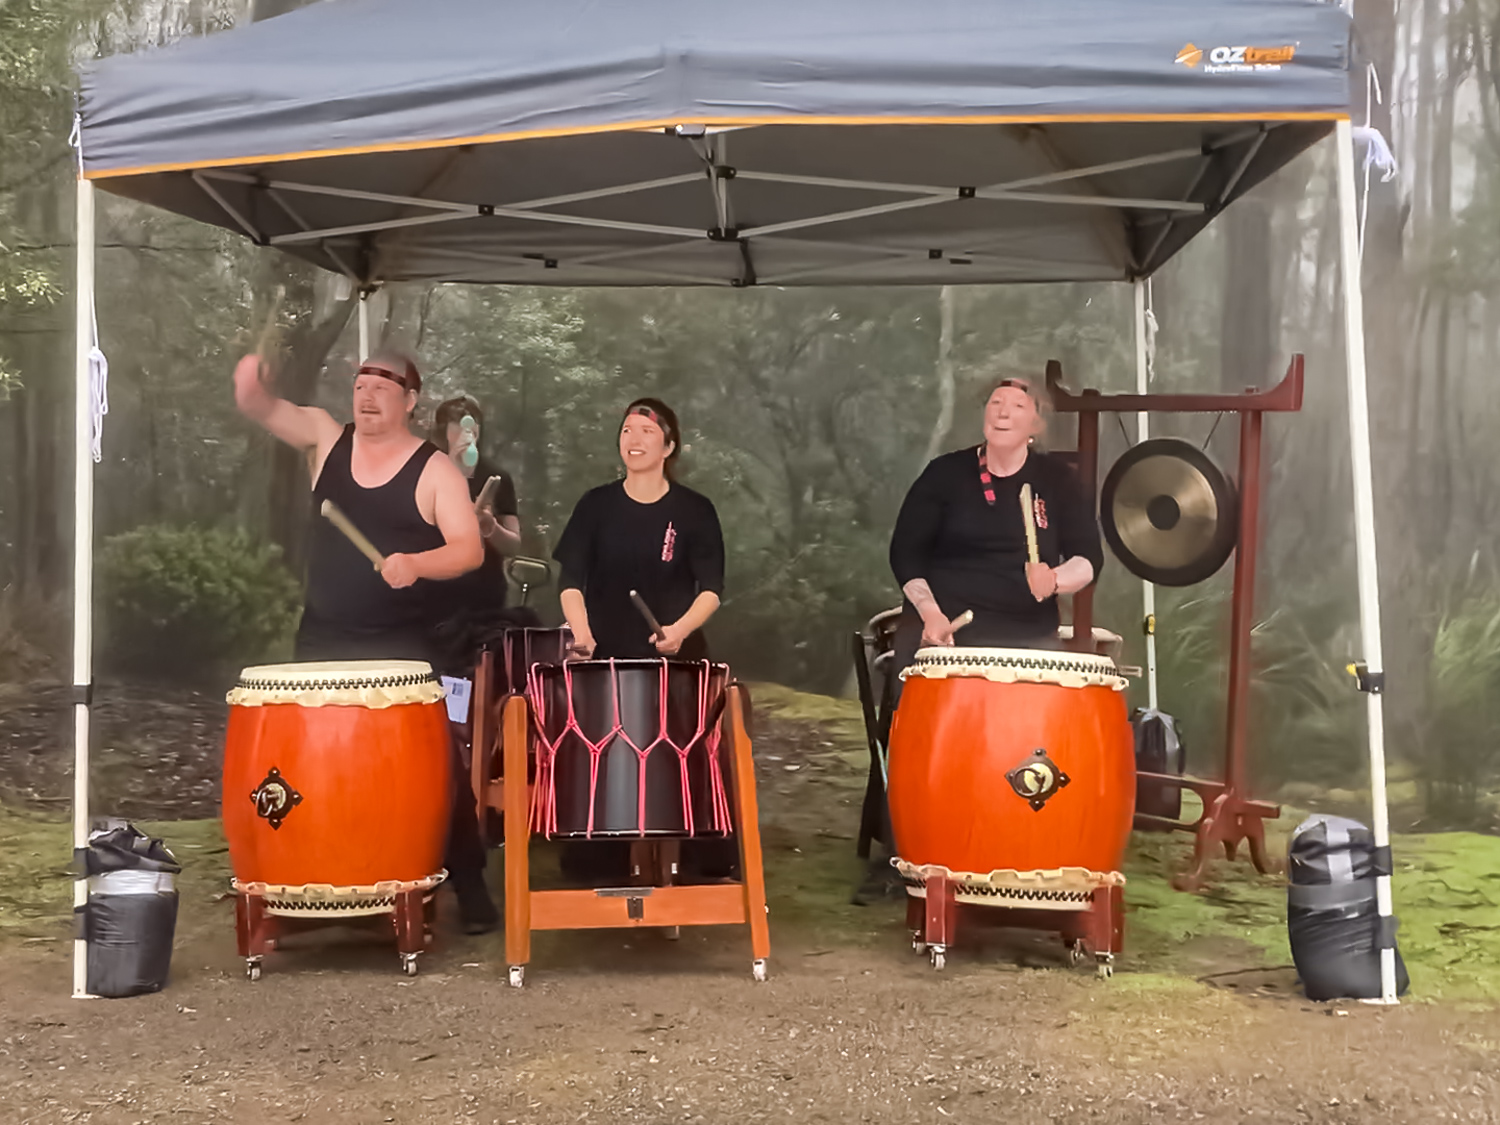 Three people playing large orange drums